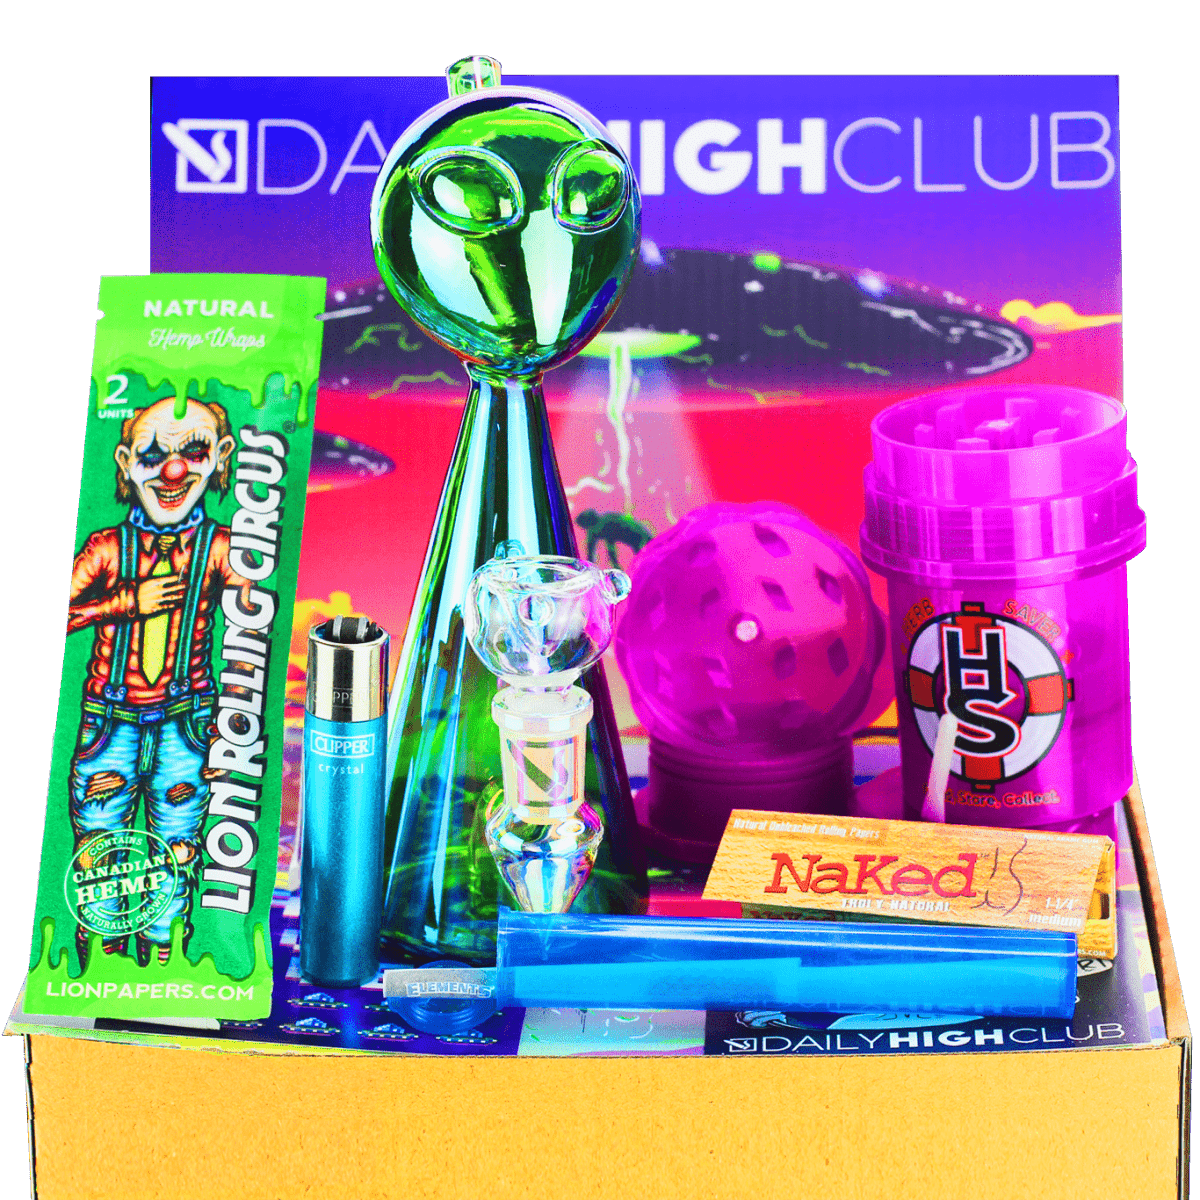 Daily High Club Box 